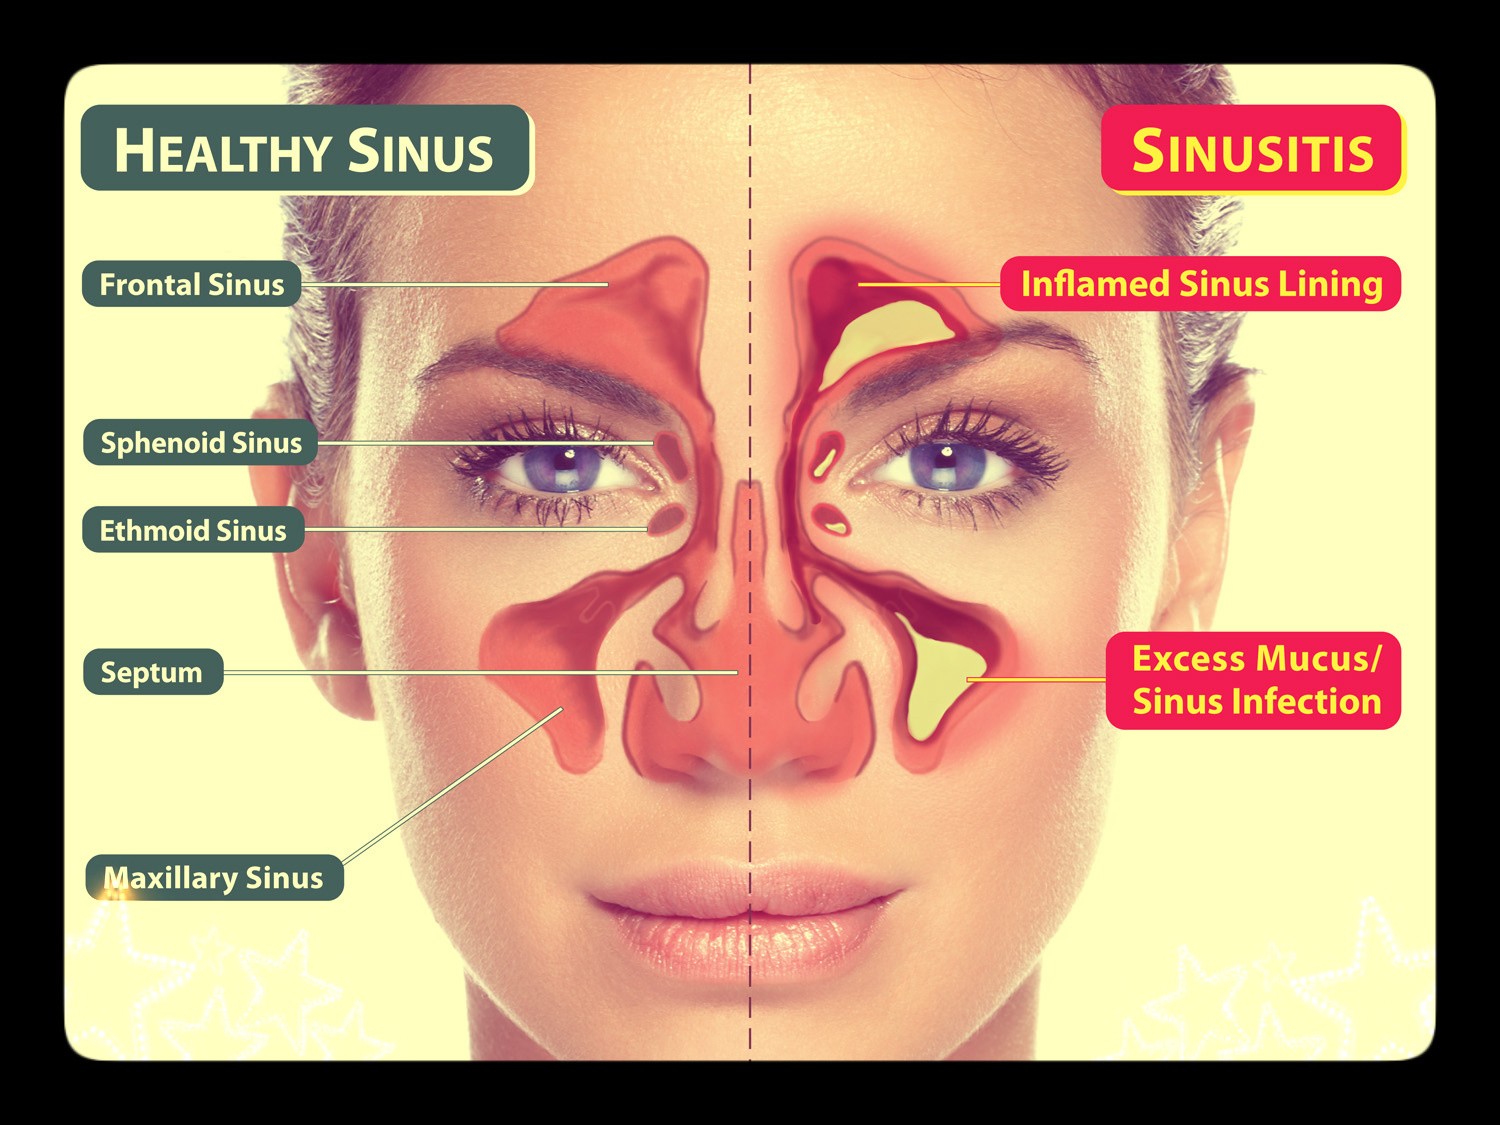 healthy-sinus-vs-sinusitis